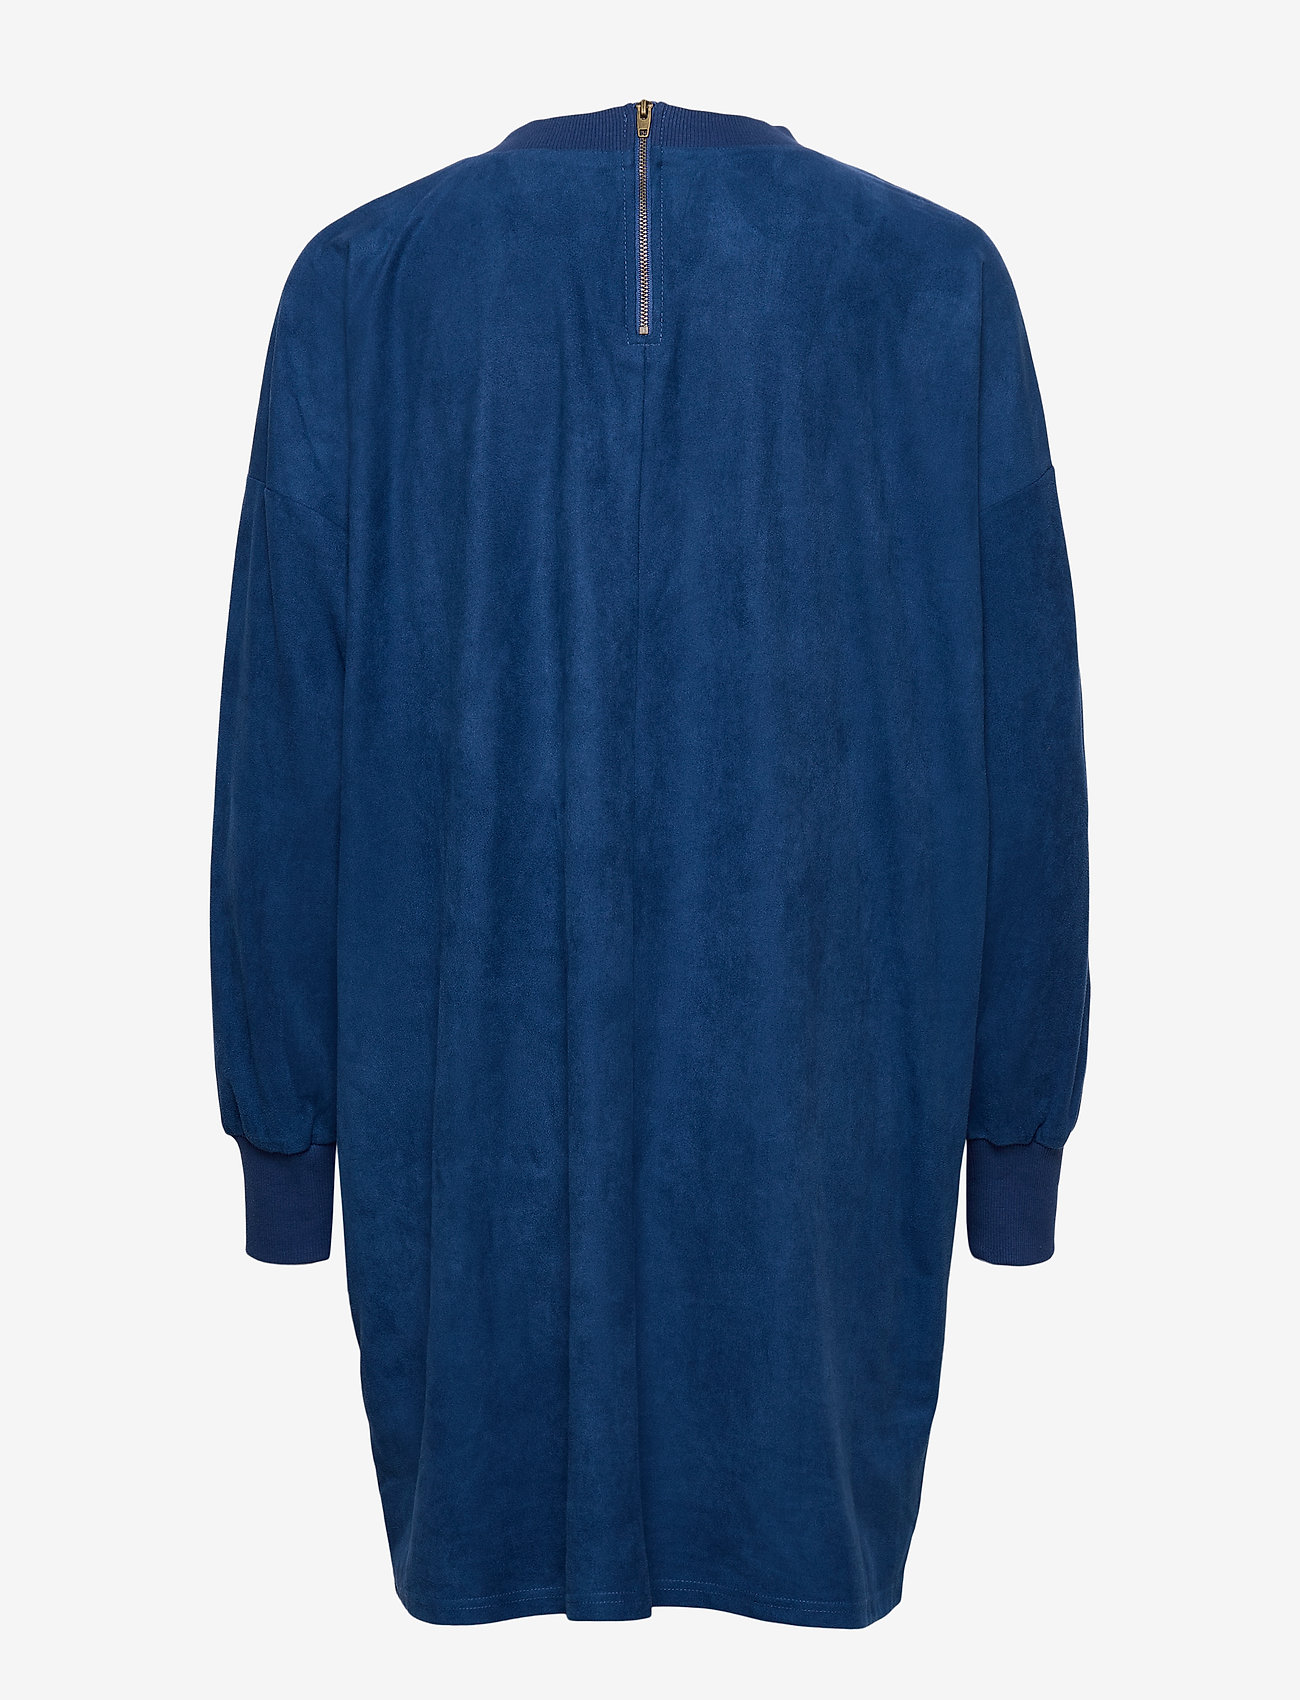 EDC by Esprit - Dresses woven - t-shirt dresses - bright blue - 1